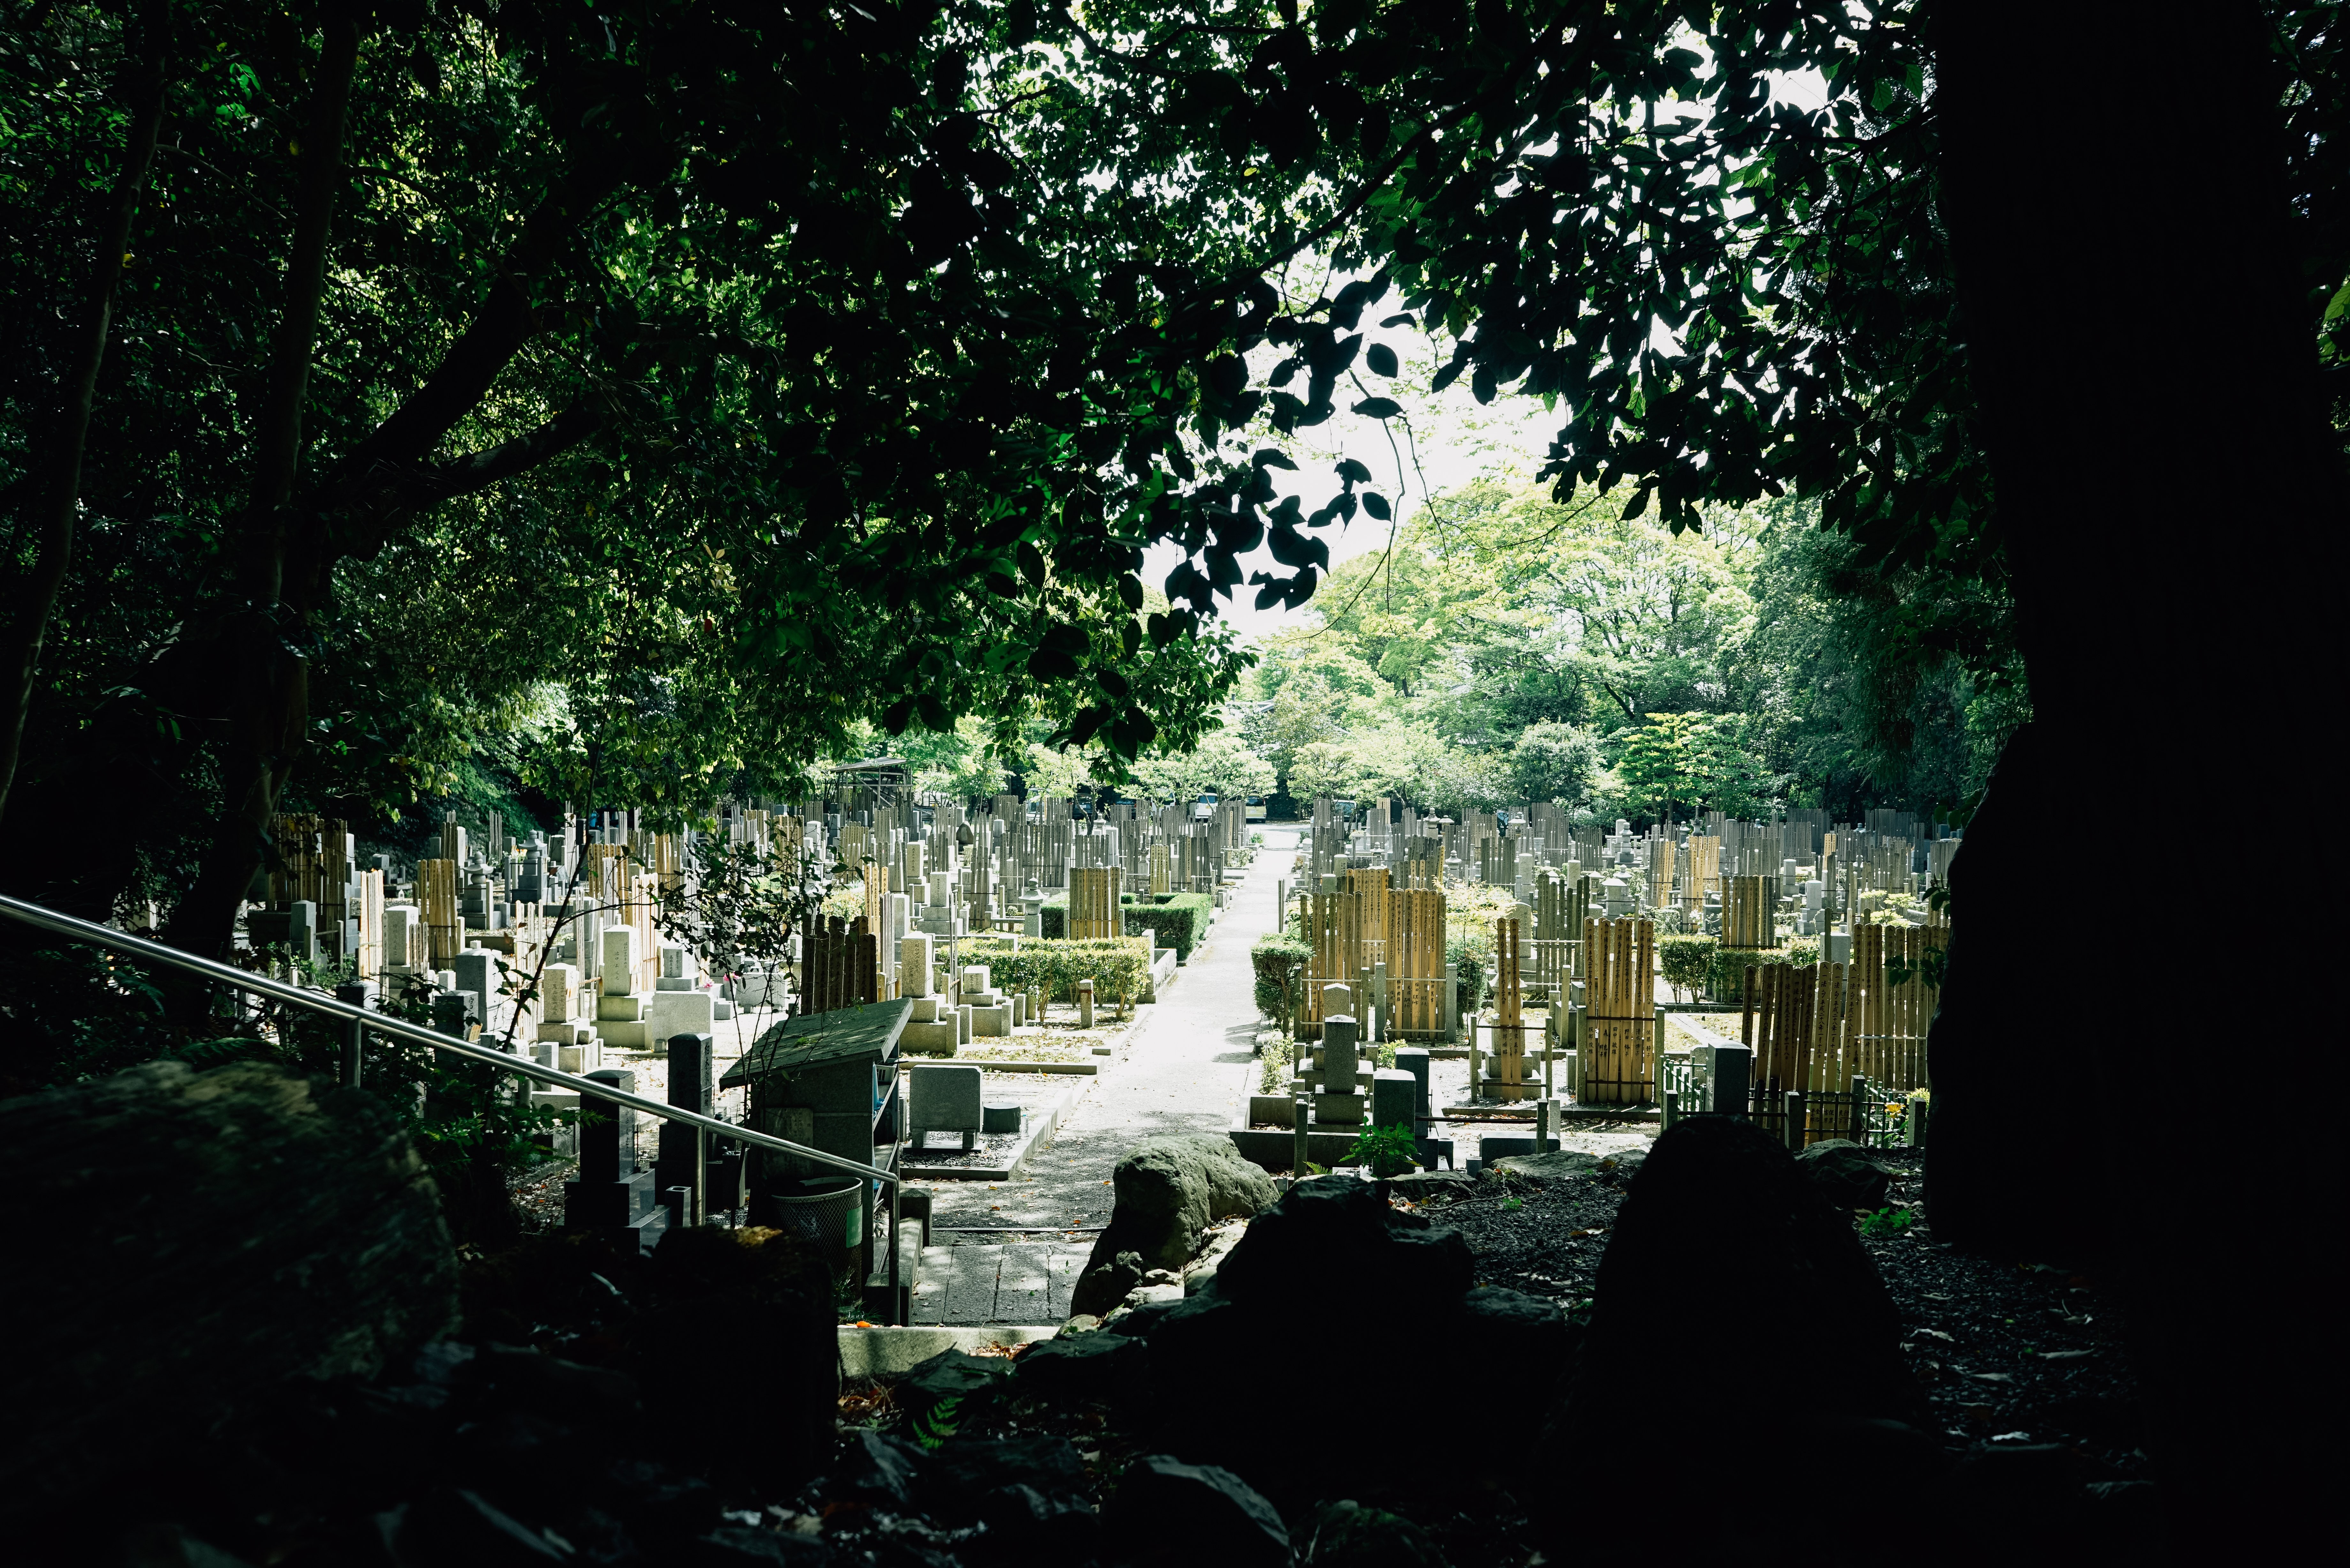 La luz del sol ilumina la foto del cementerio japonés